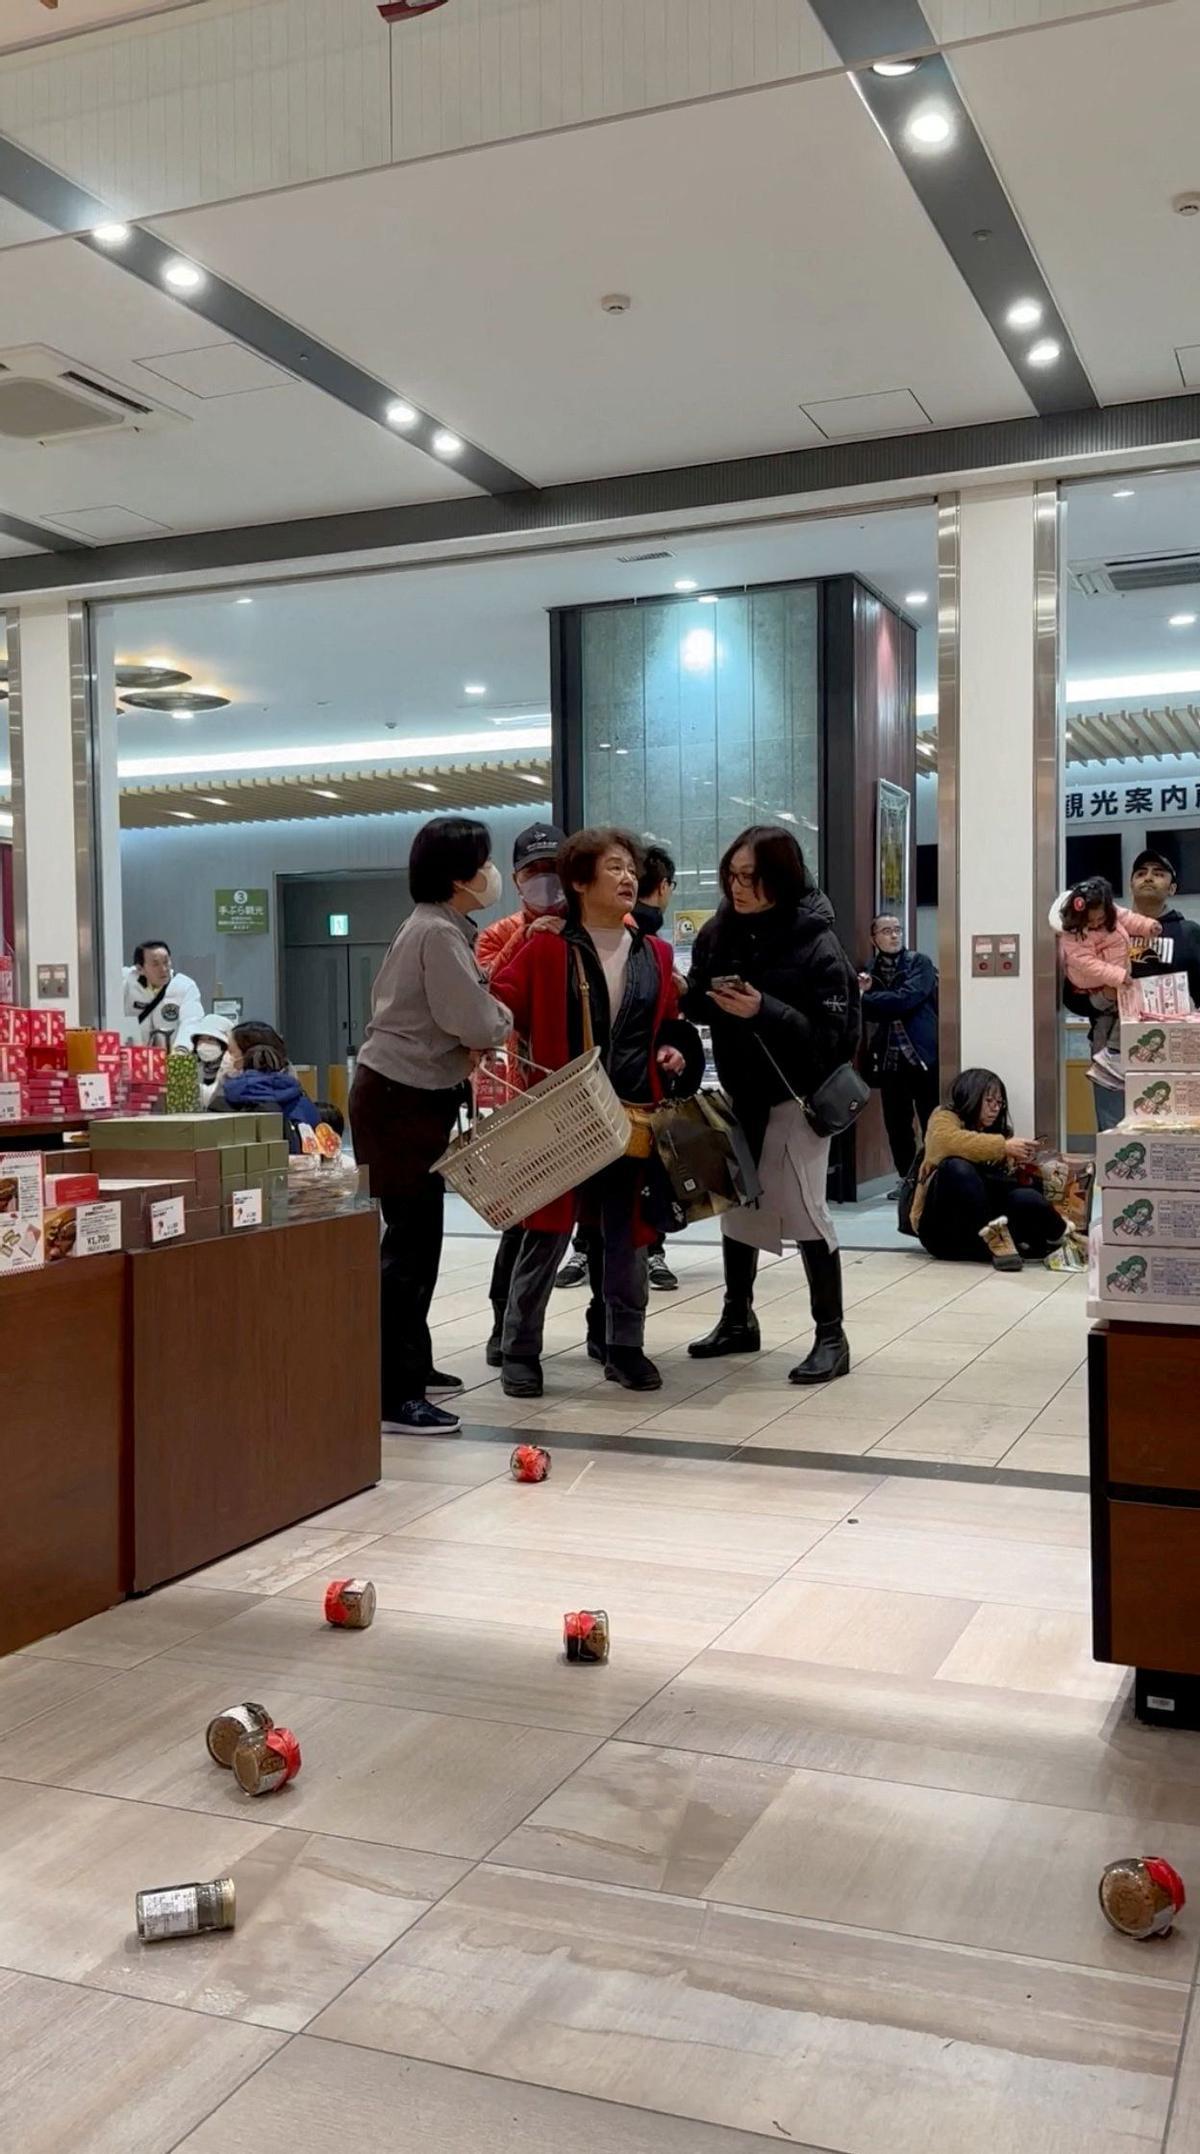 La gente se sienta en el suelo mientras los artículos caen de los estantes en una tienda a causa de un terremoto, en Kanazawa, Ishikawa, Japón